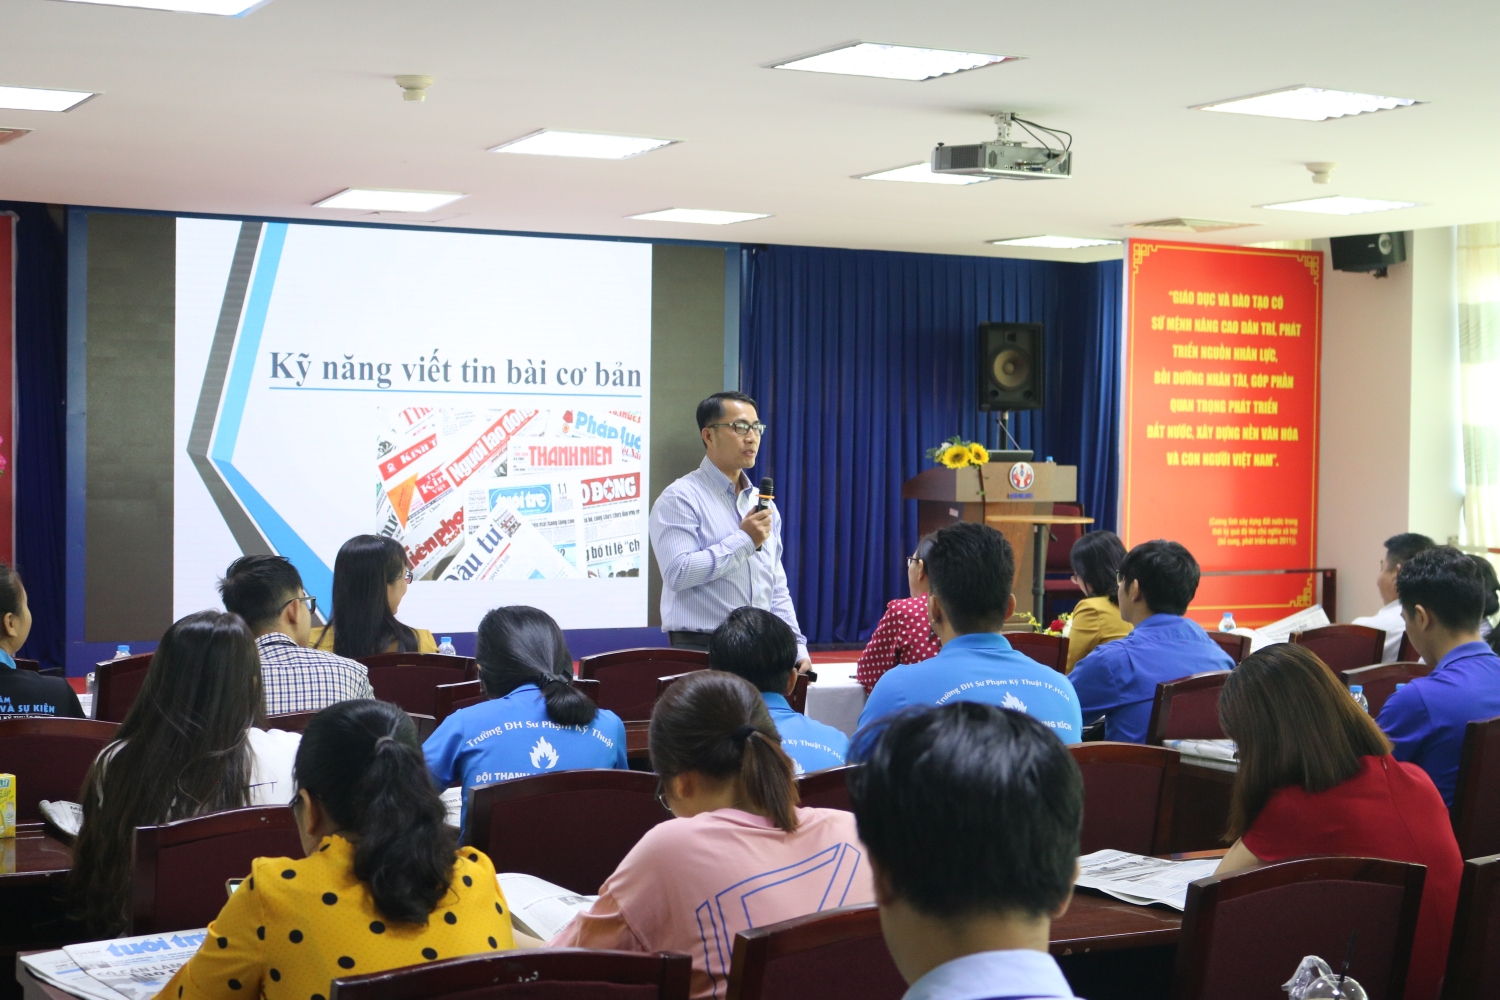 Đồng chí Trương Ngọc Trước – Phó Tổng biên tập phụ trách trang tin điện tử Thành phố hướng dẫn cách viết tin cho học viên